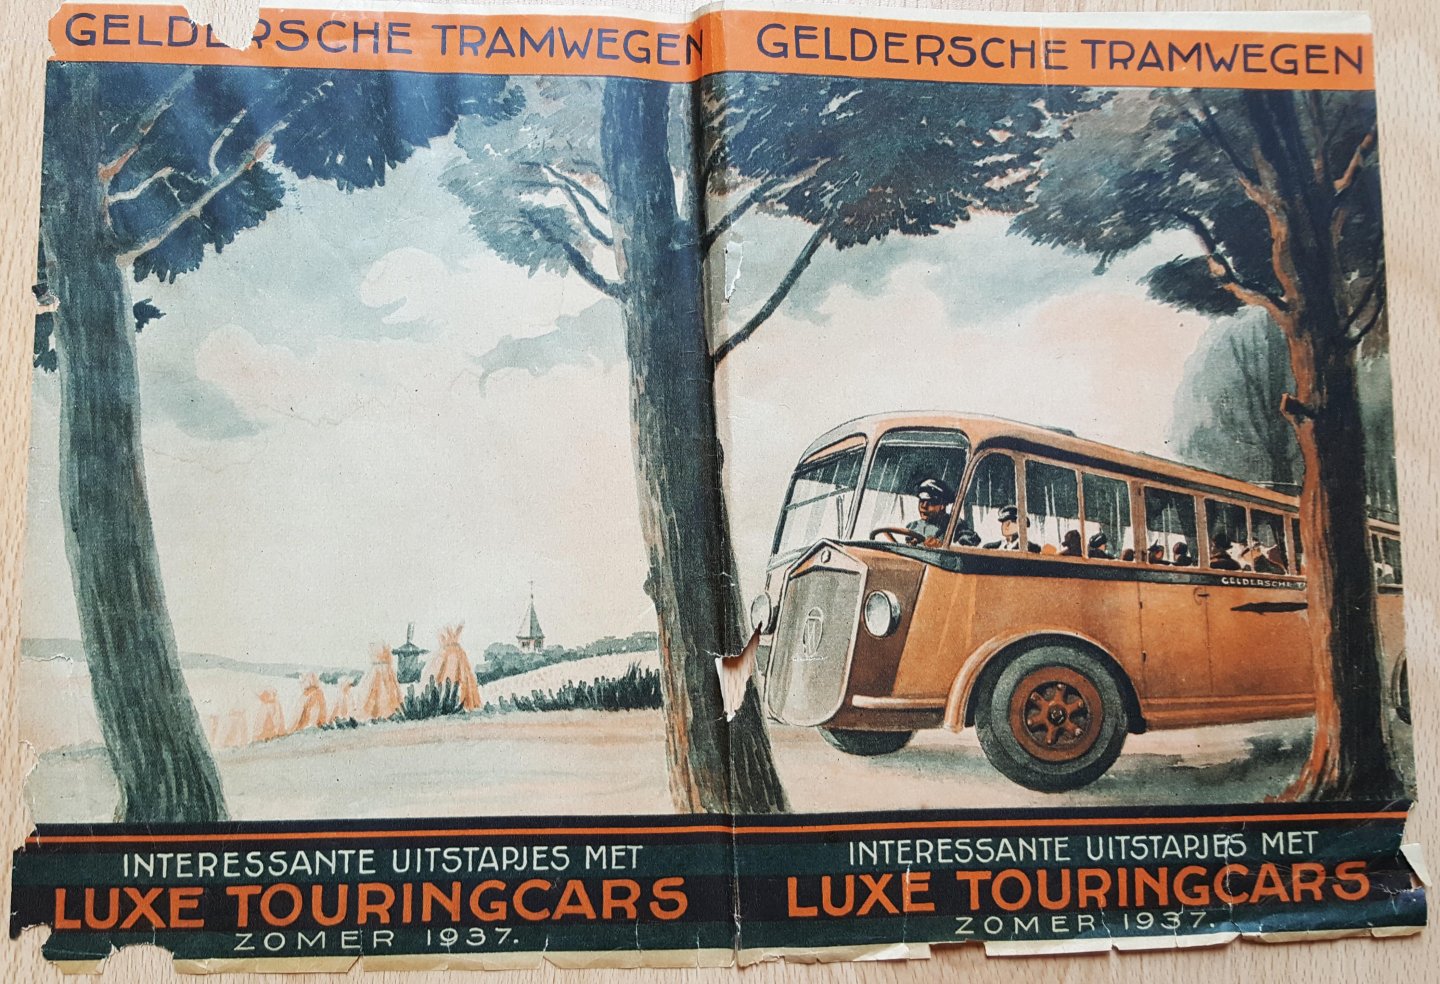  - Gelderse Tramwegen, interessante uitstapjes met luxe toeringcars zomer 1937